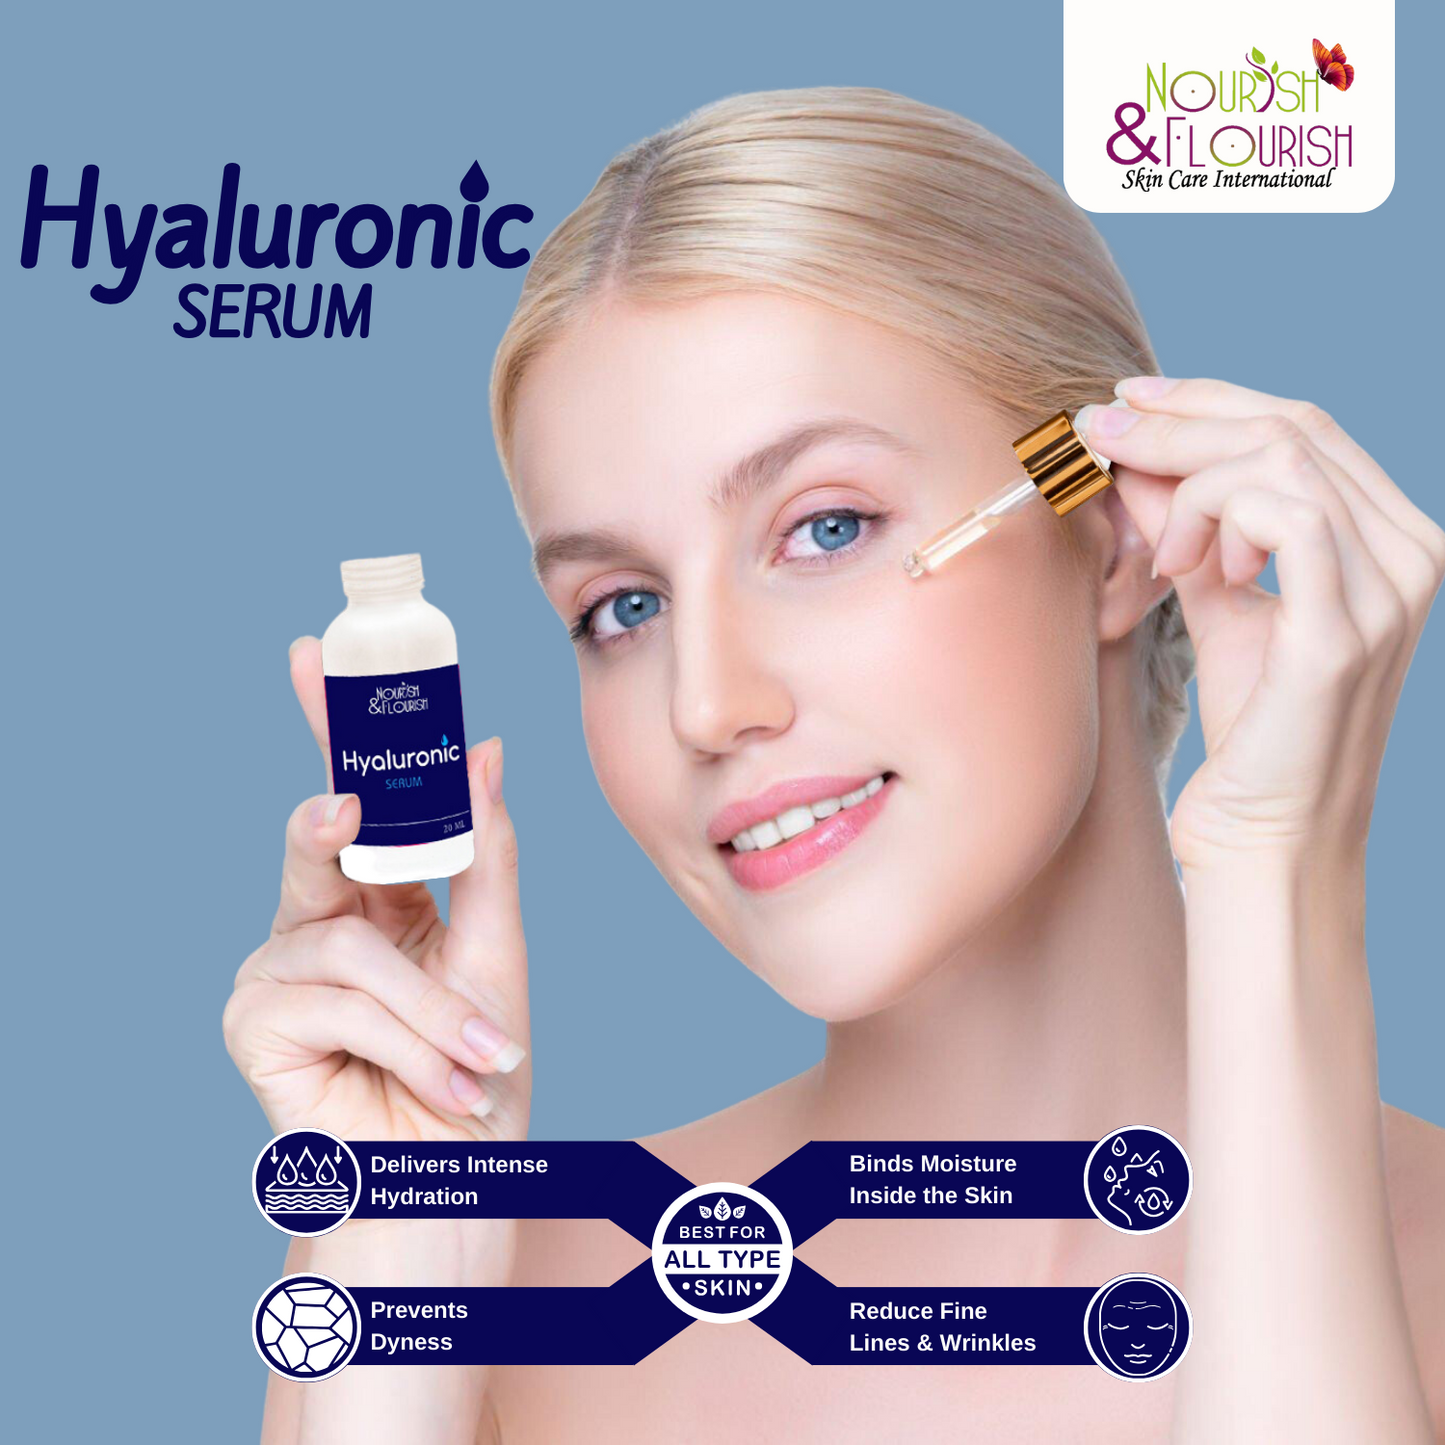 Nourish & Flourish Hyaluronic Serum - Hydrating Skin Tightening Serum